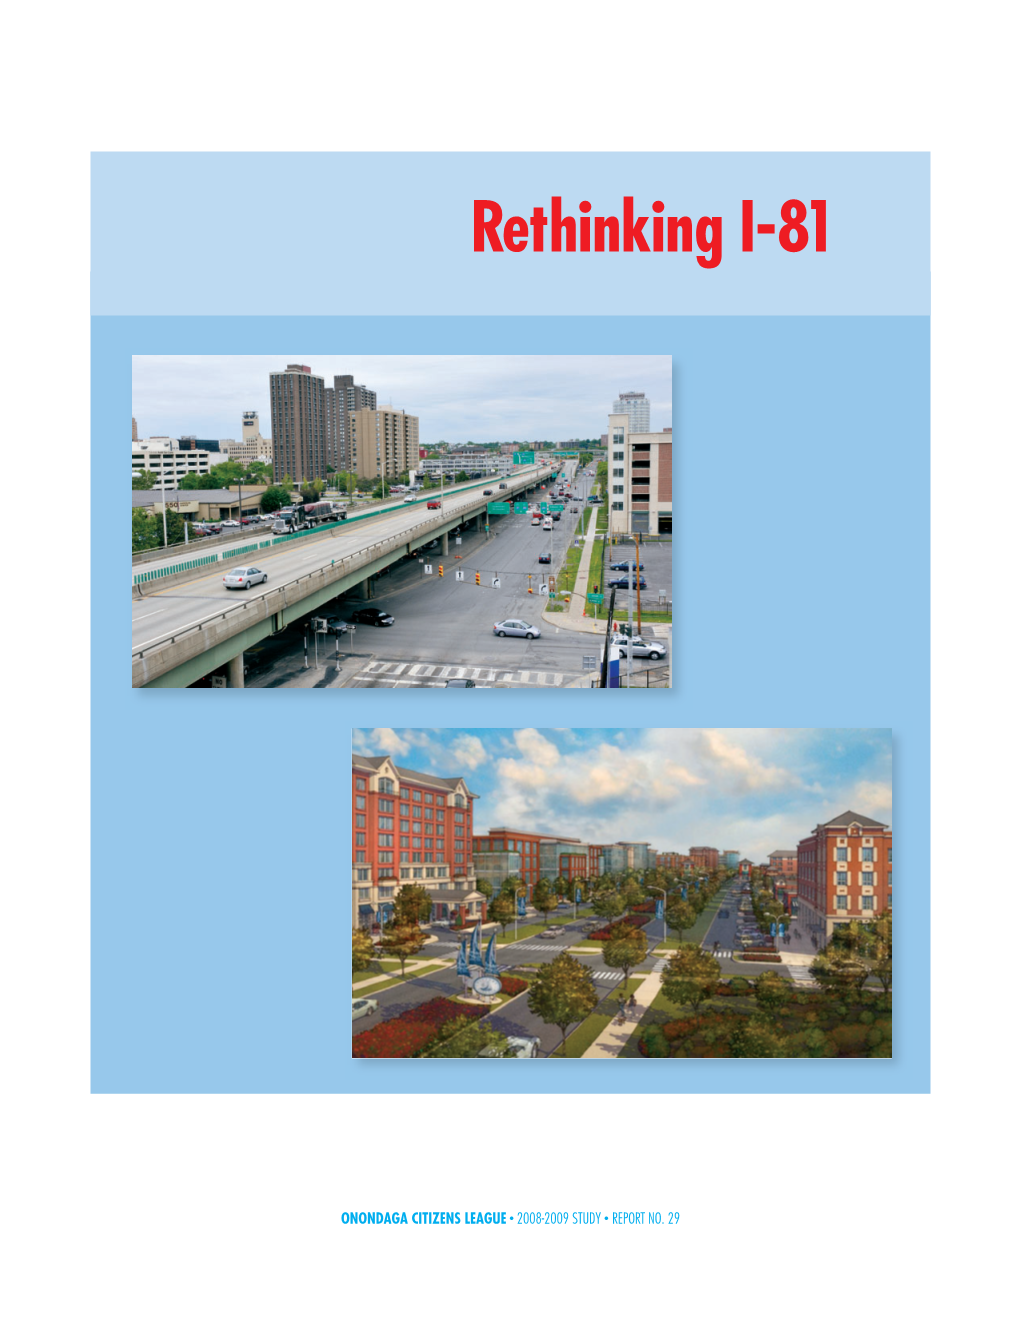 Rethinking I-81